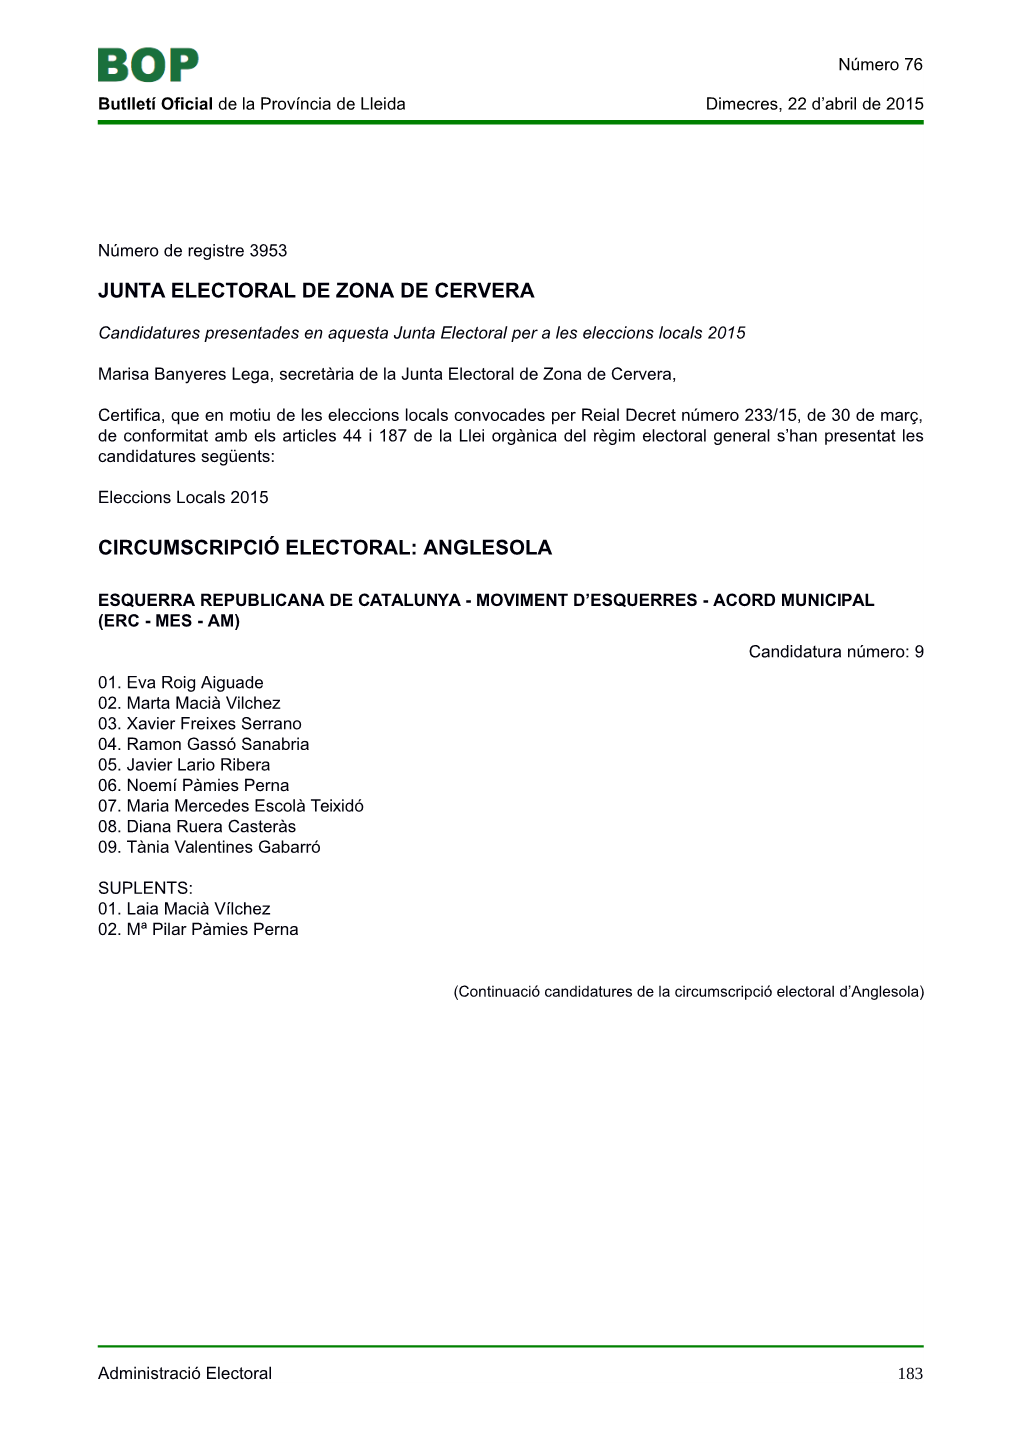 Junta Electoral De Zona De Cervera Circumscripció Electoral: Anglesola